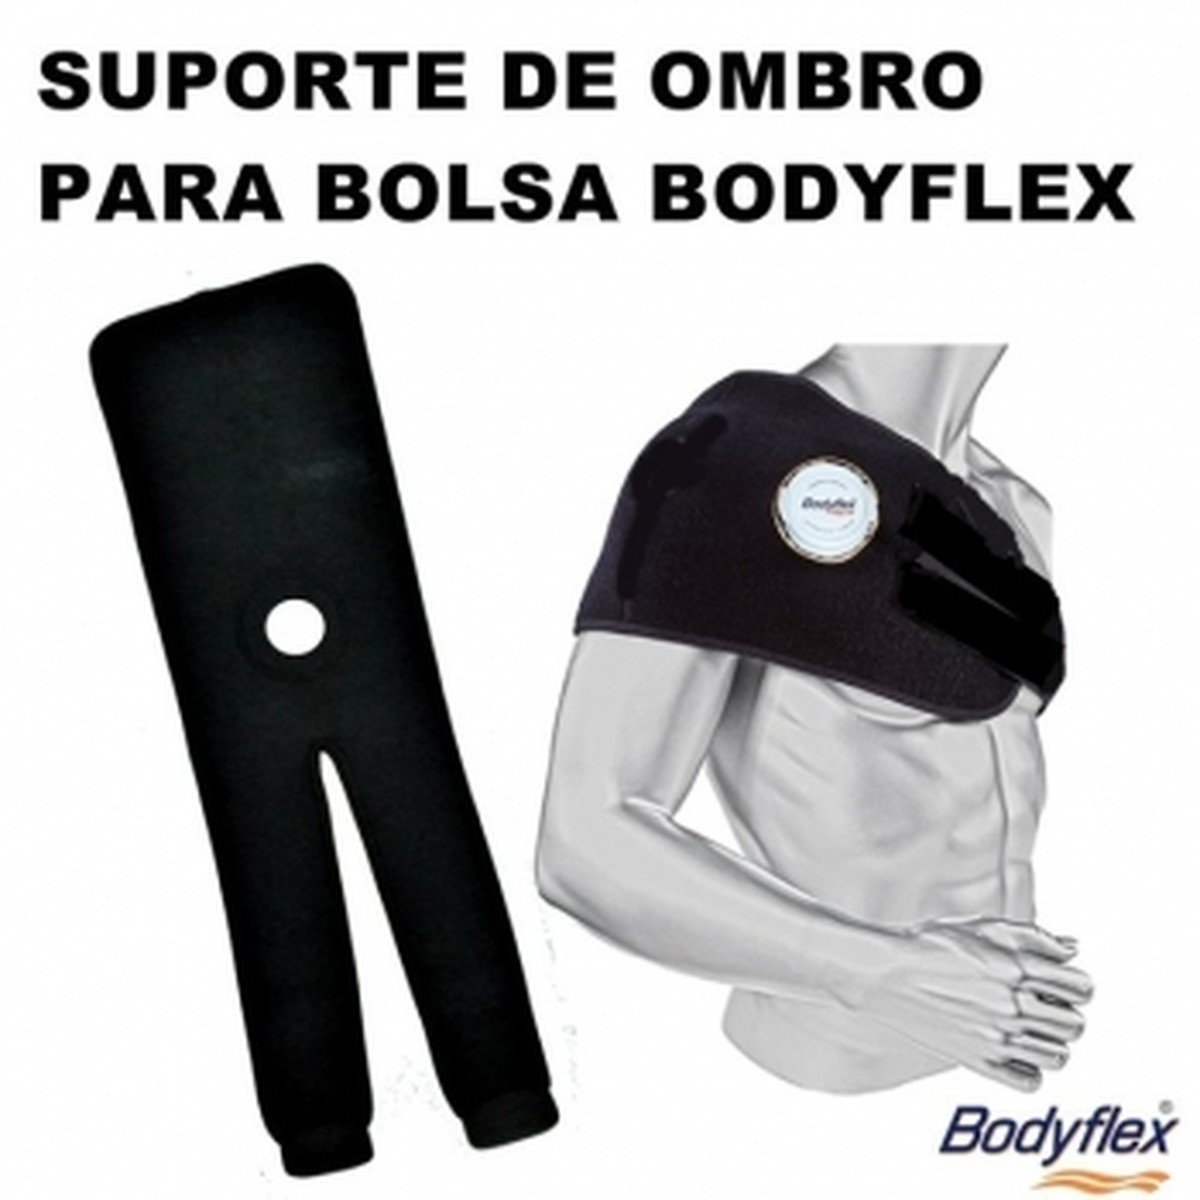 Foto do produto Suporte para bolsa de gelo Bodyflex